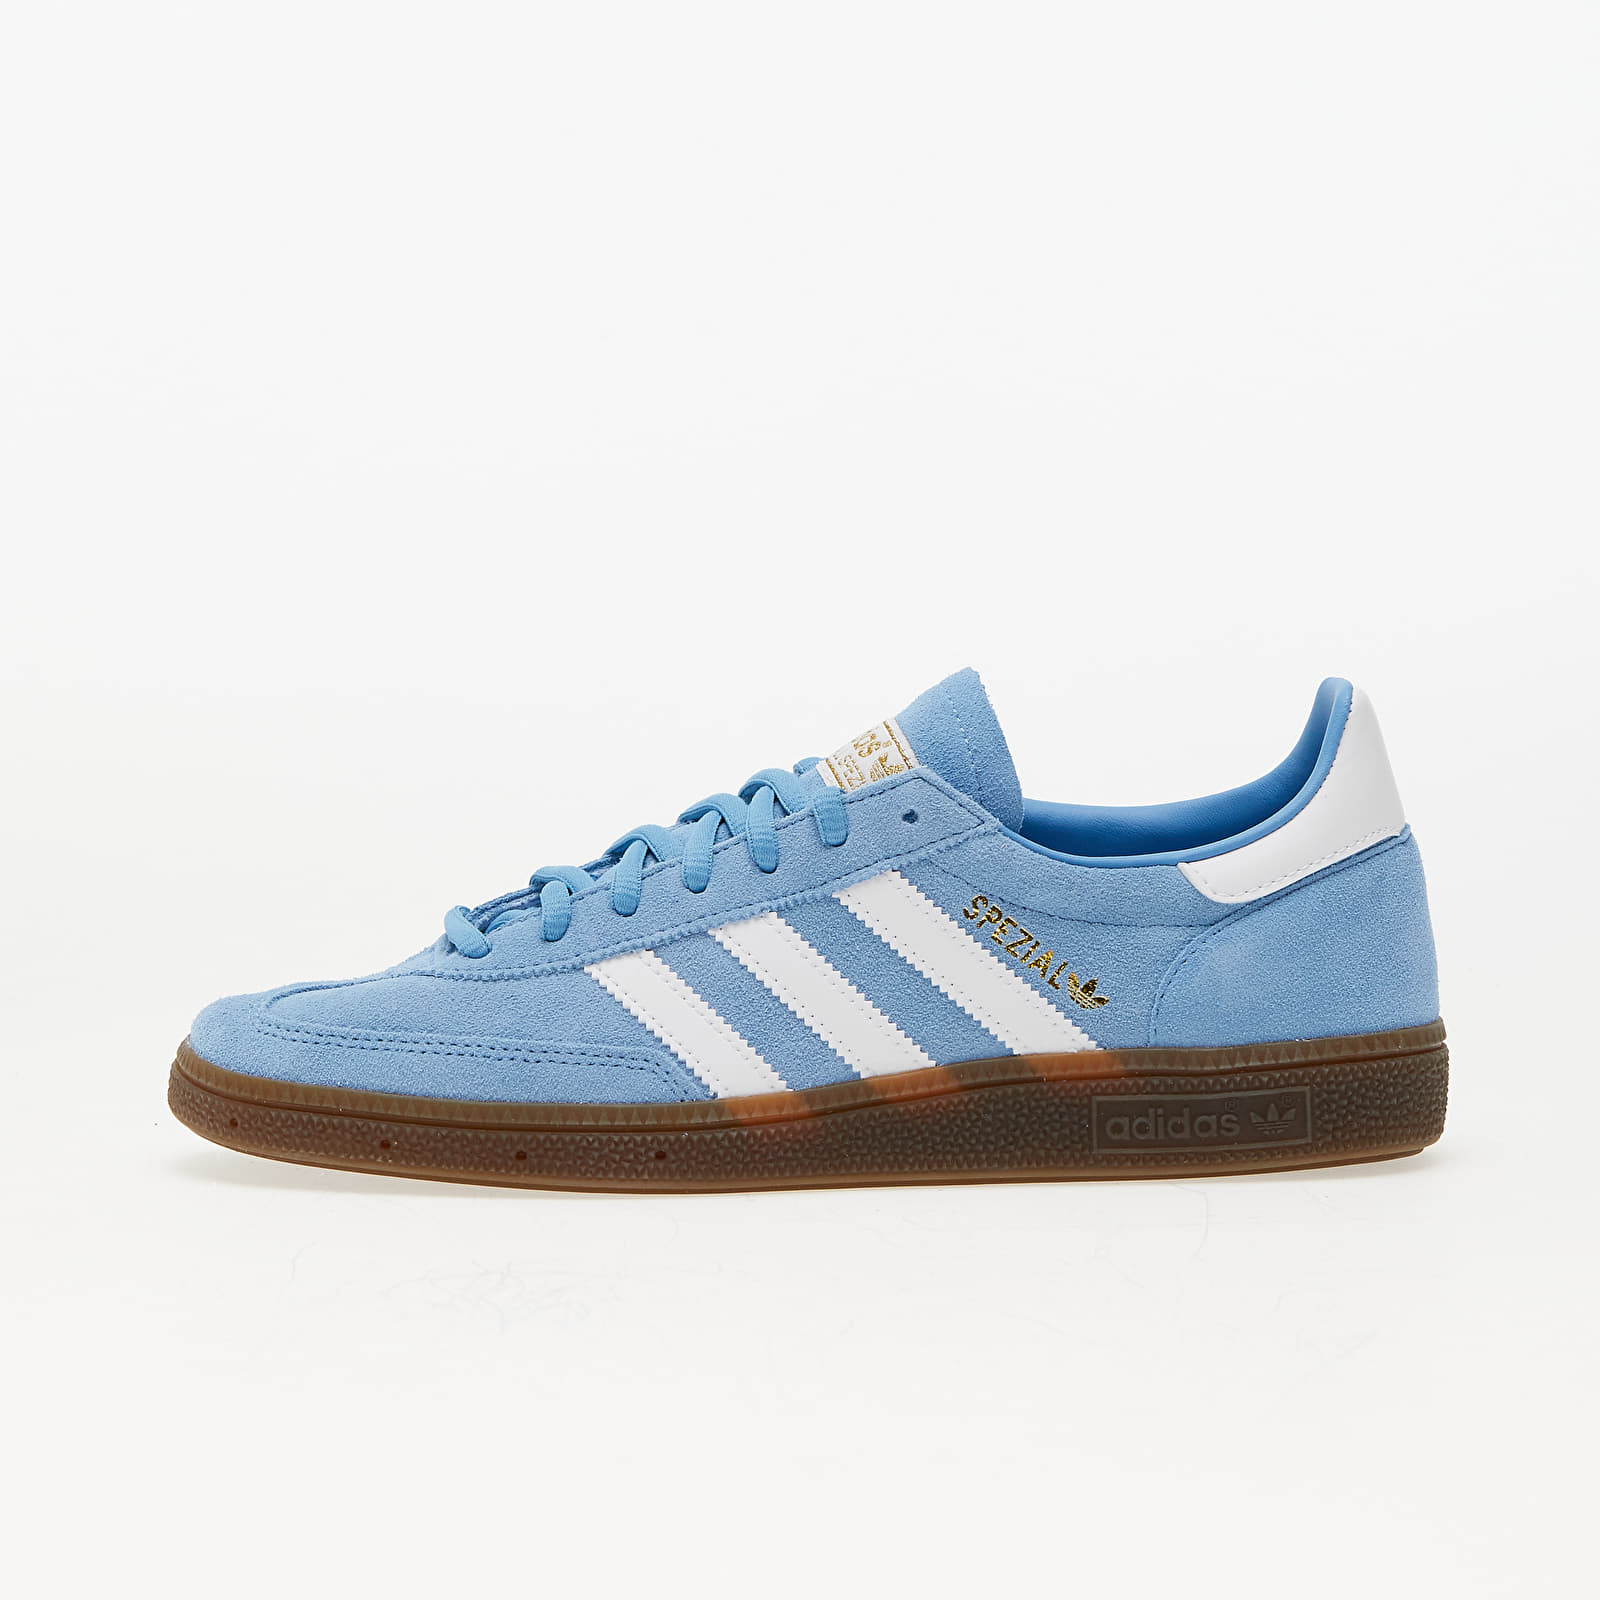 Încălțăminte și sneakerși pentru bărbați adidas Spezial Handball Light blue/ Ftw White/ Gum5